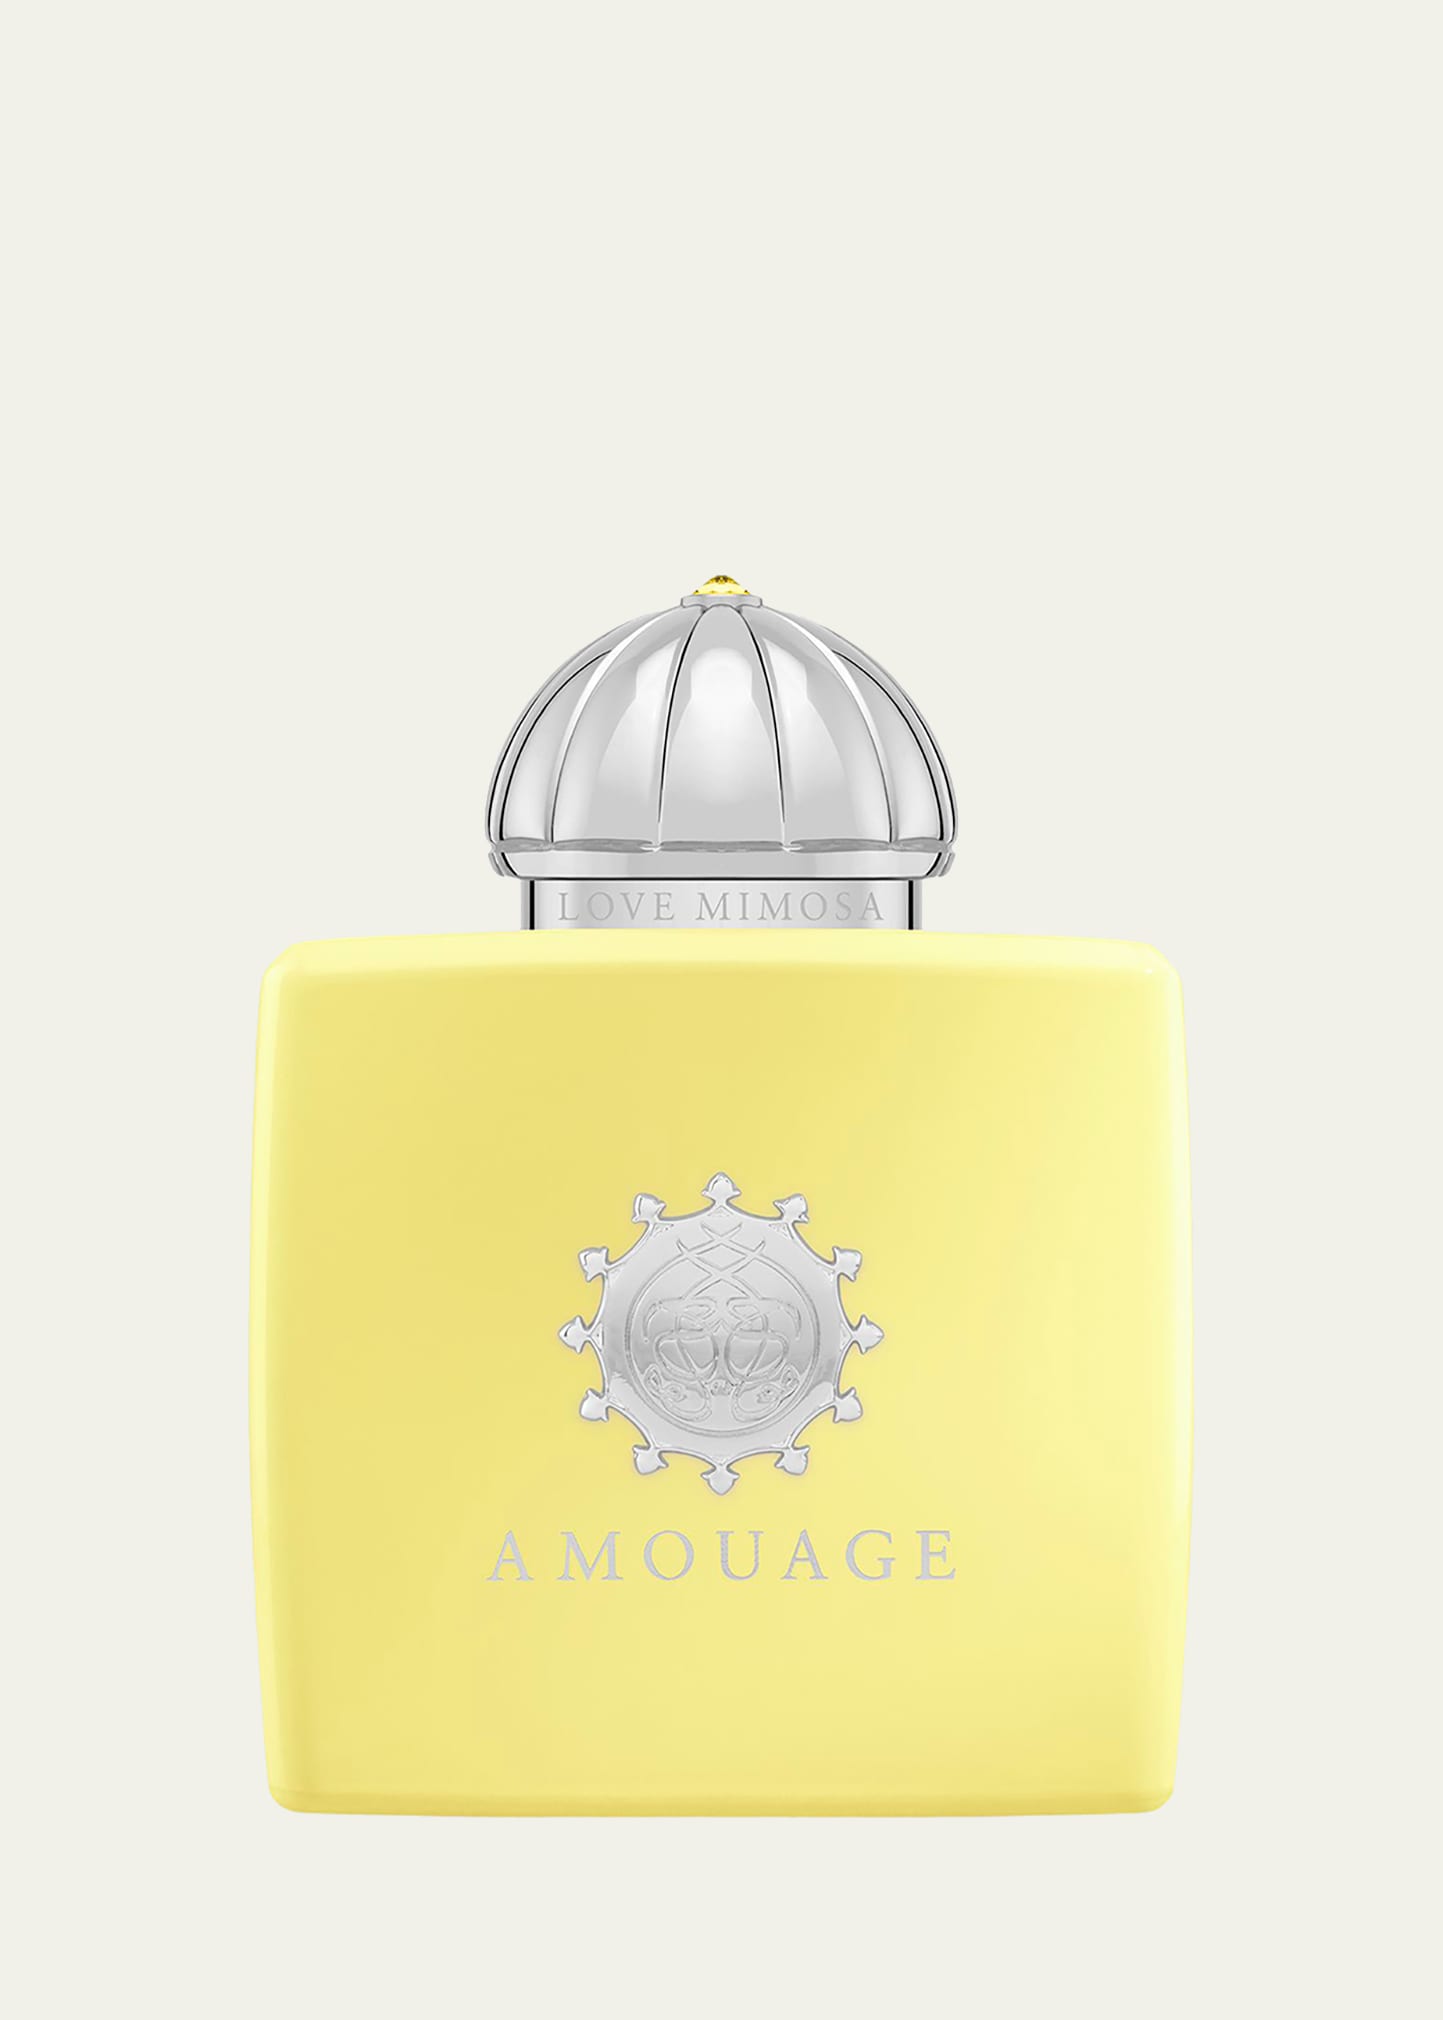 Amouage Love Mimosa Woman Eau de Parfum, 3.3 oz.